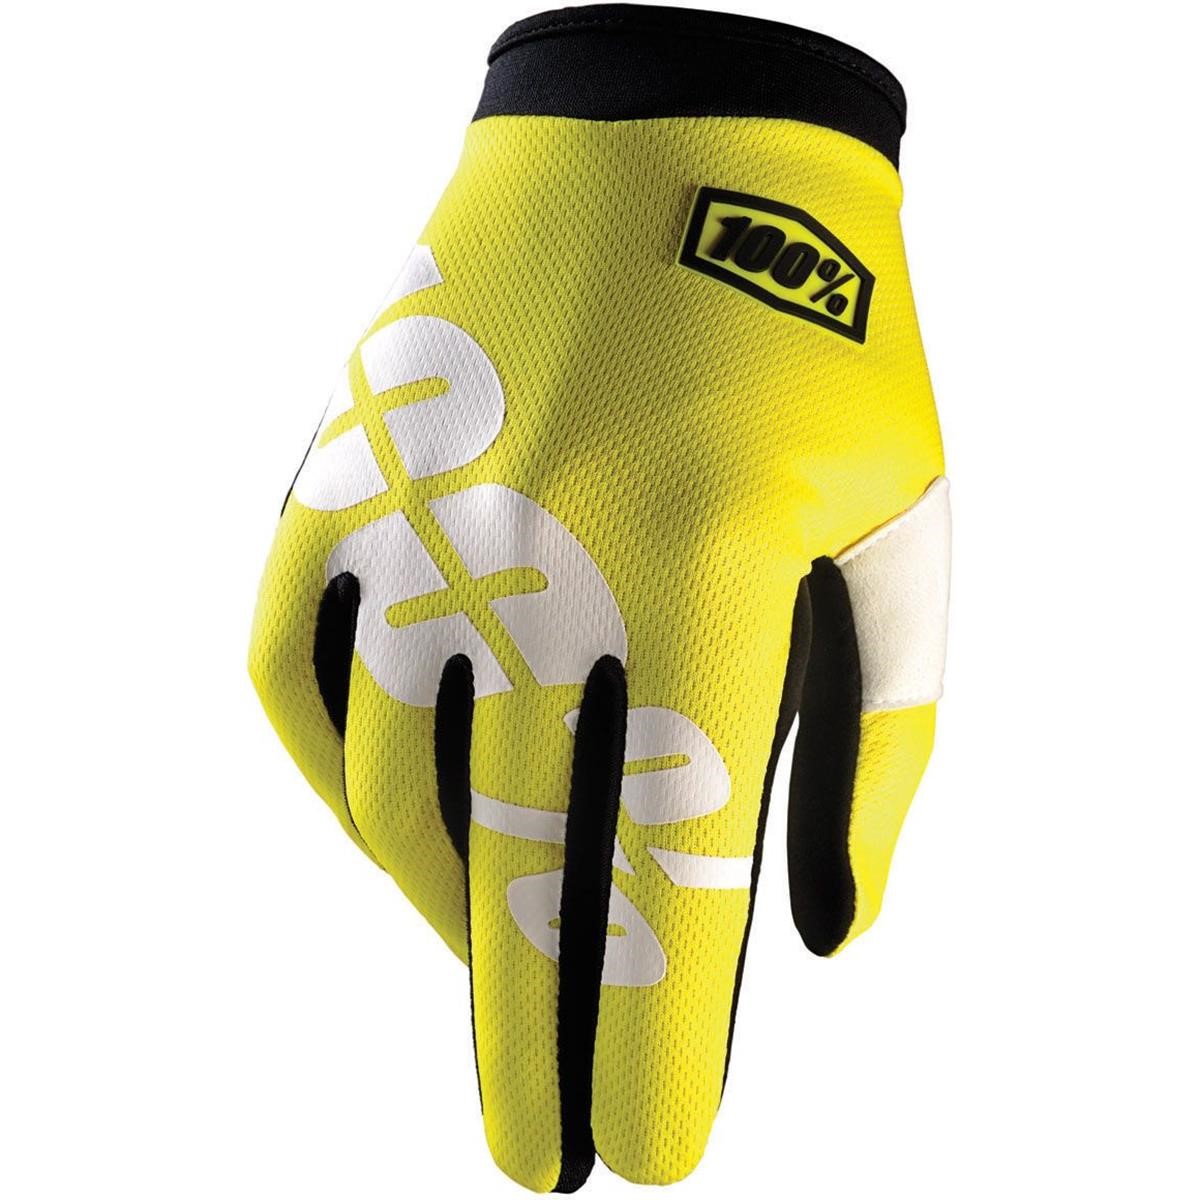 100% Bike Gloves iTrack Neon Yellow